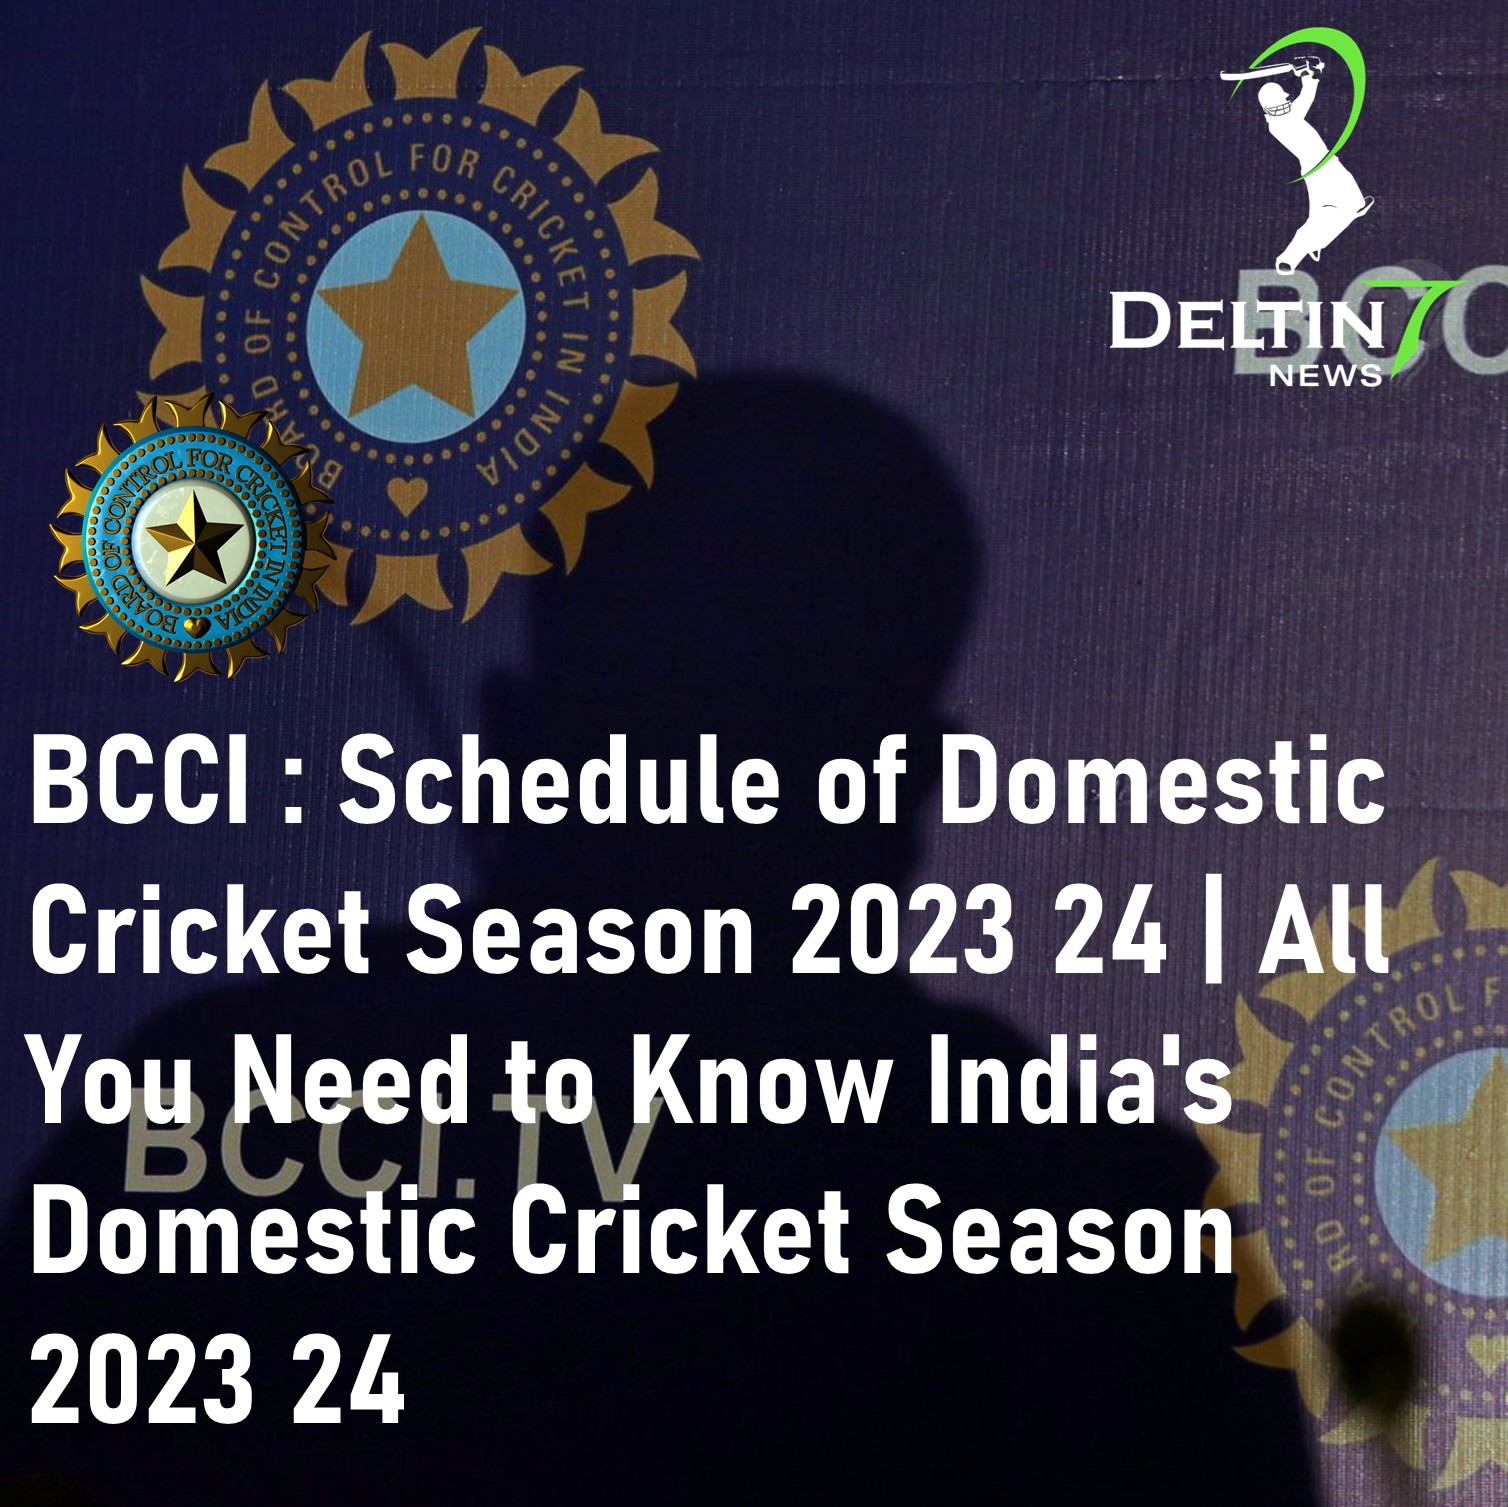 BCCI Announces Schedule of Domestic Cricket Season 2023 24